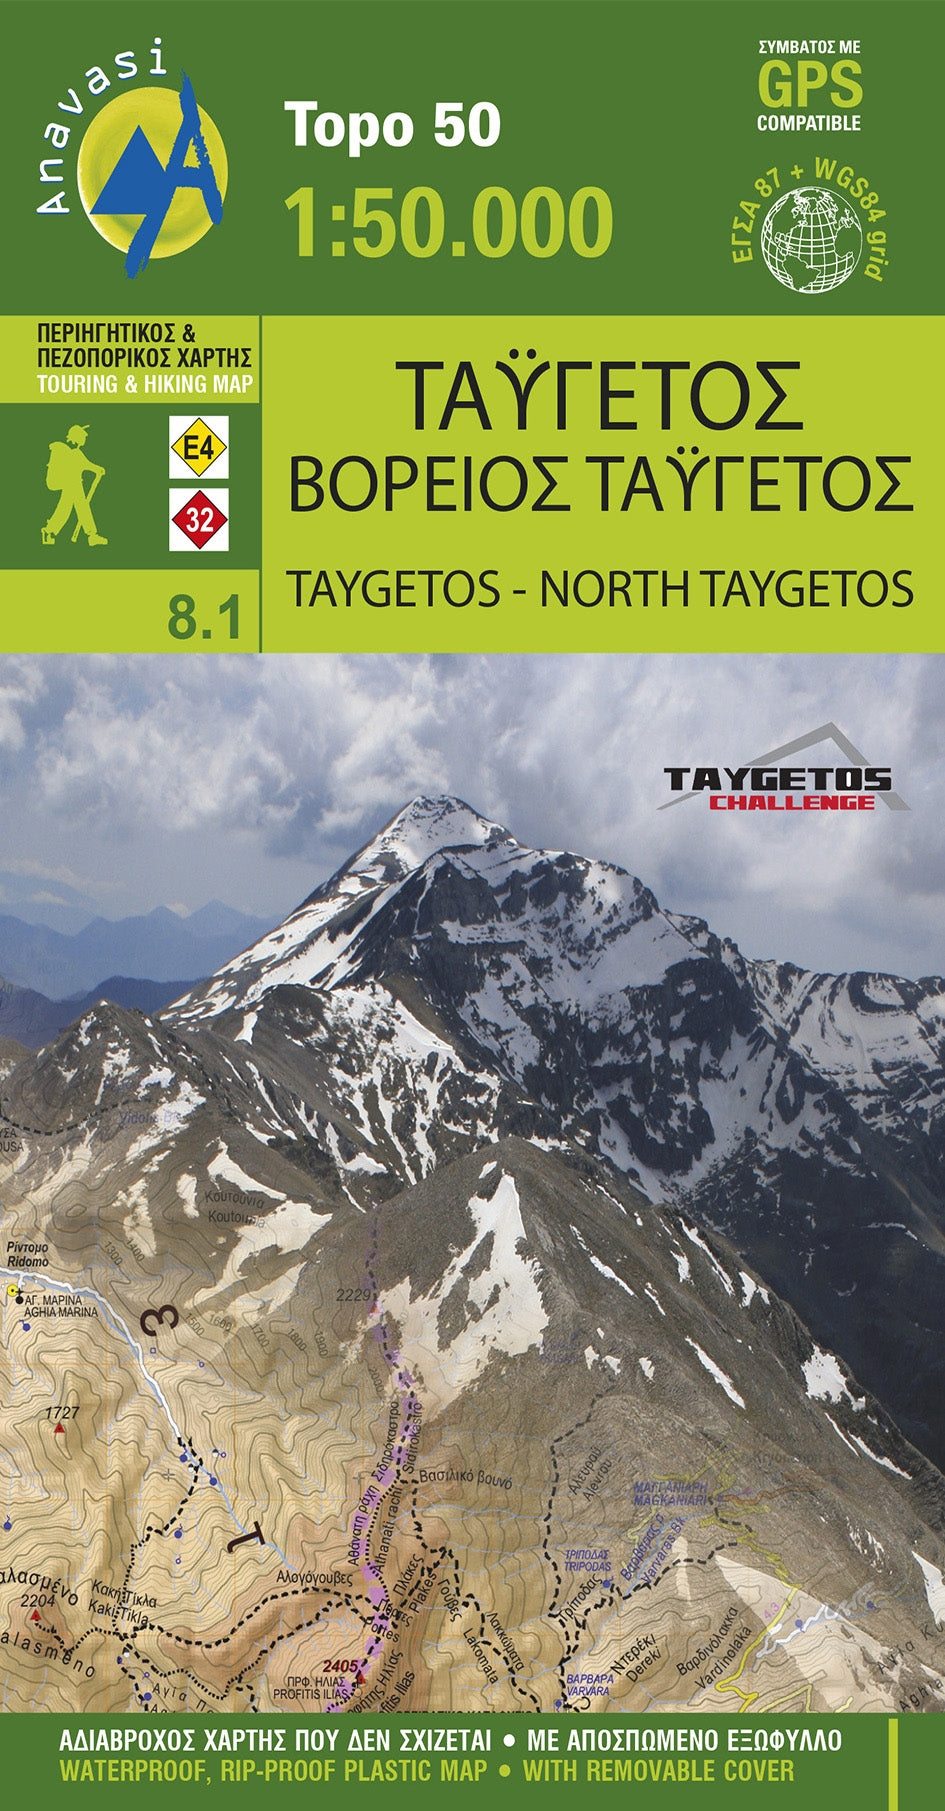 Wandelkaart Topo 50 Taygetos 1:50.000 (8.1)